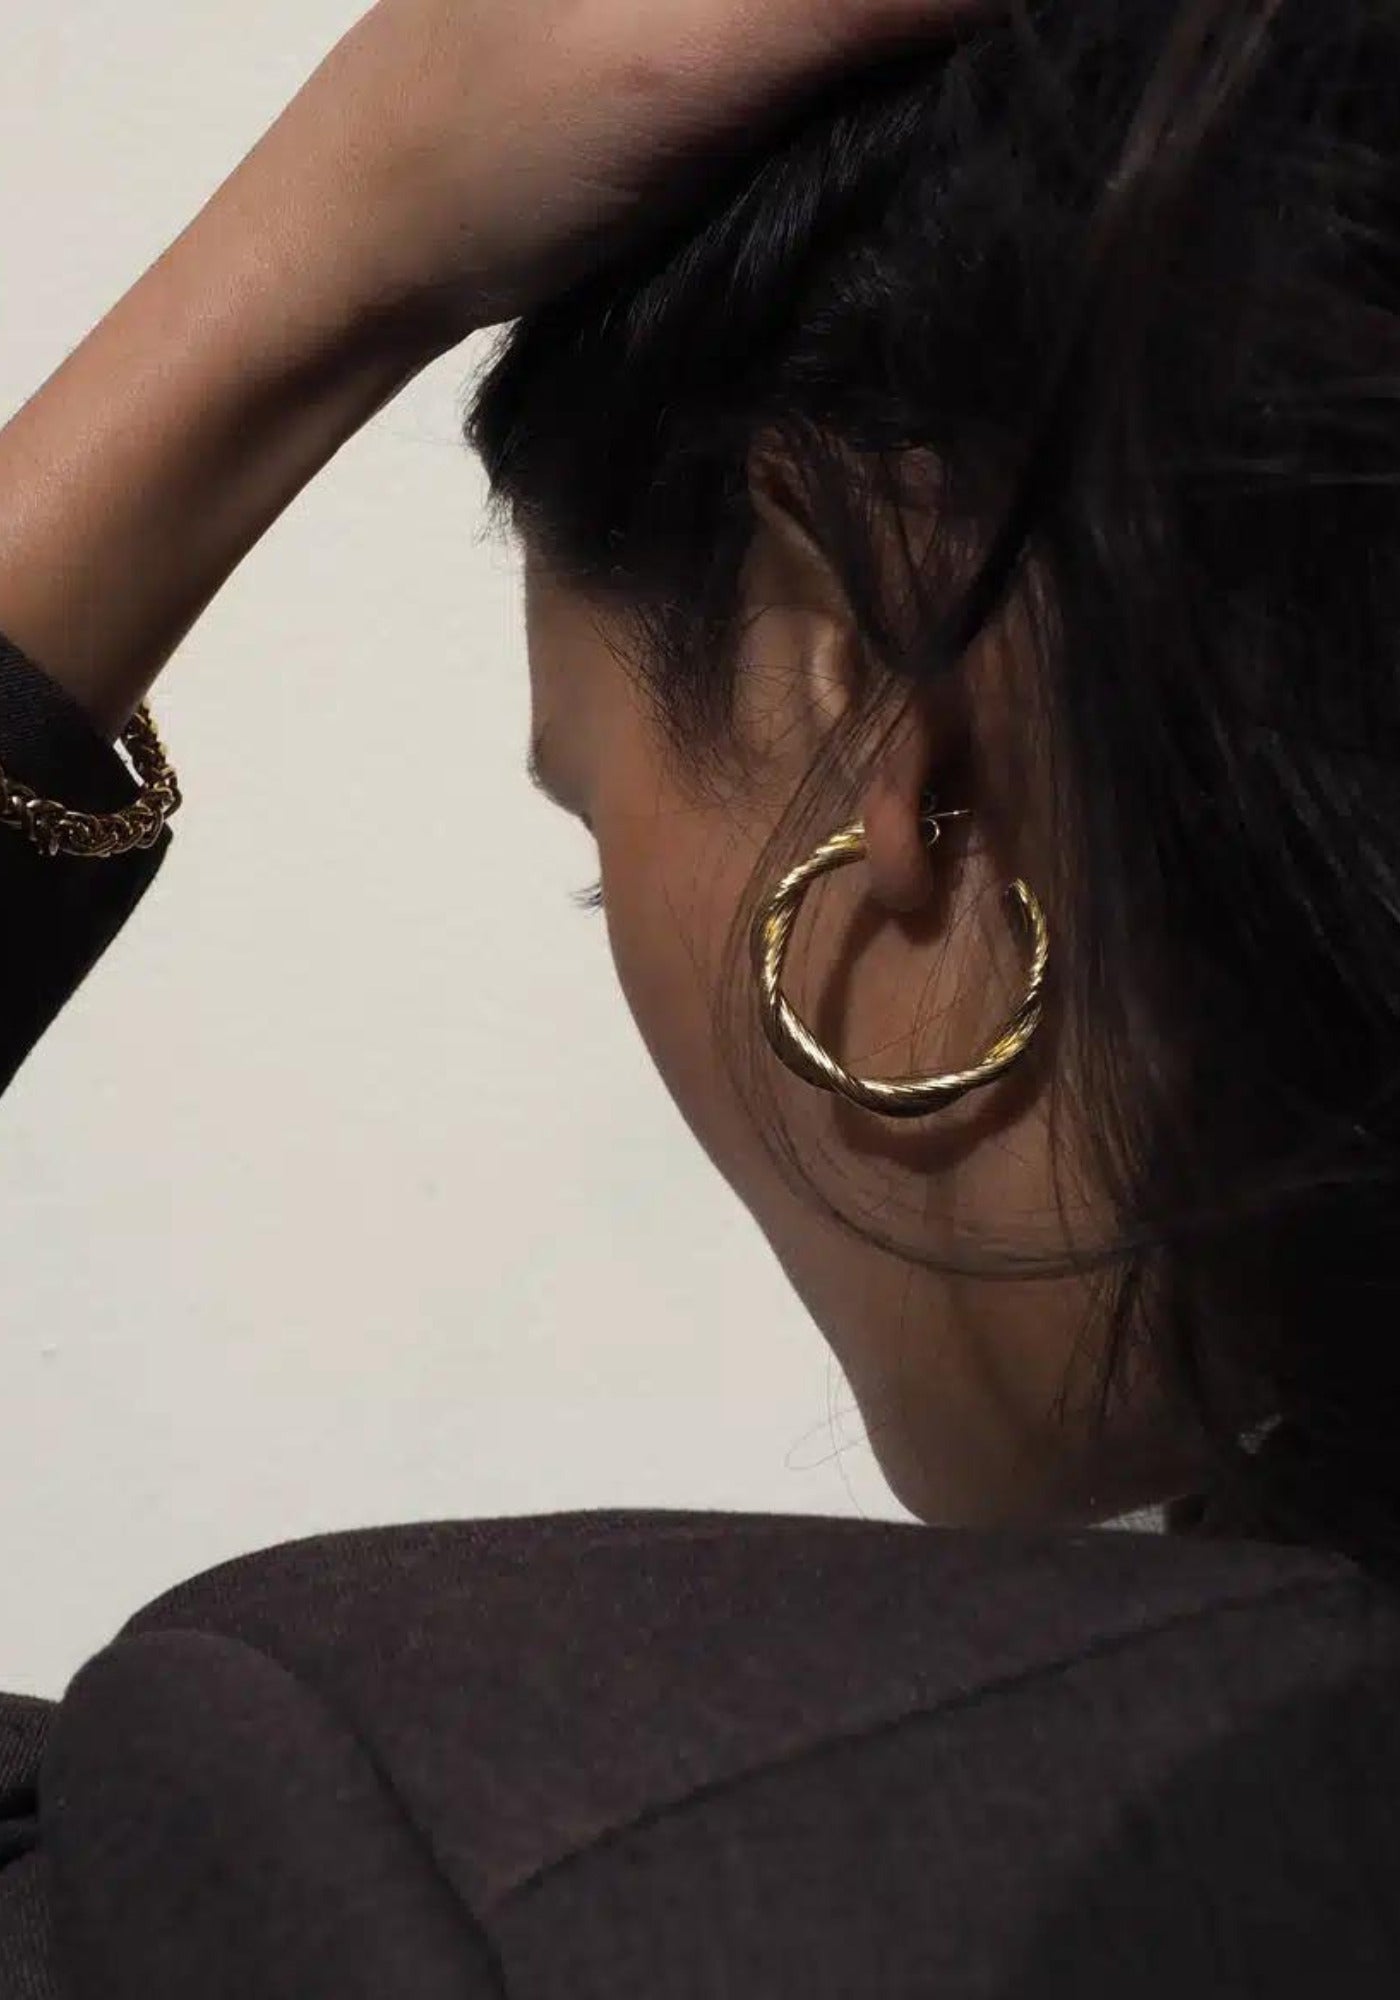 La femme porte les boucles d'oreilles Déméter en or de chez Caprice Paris